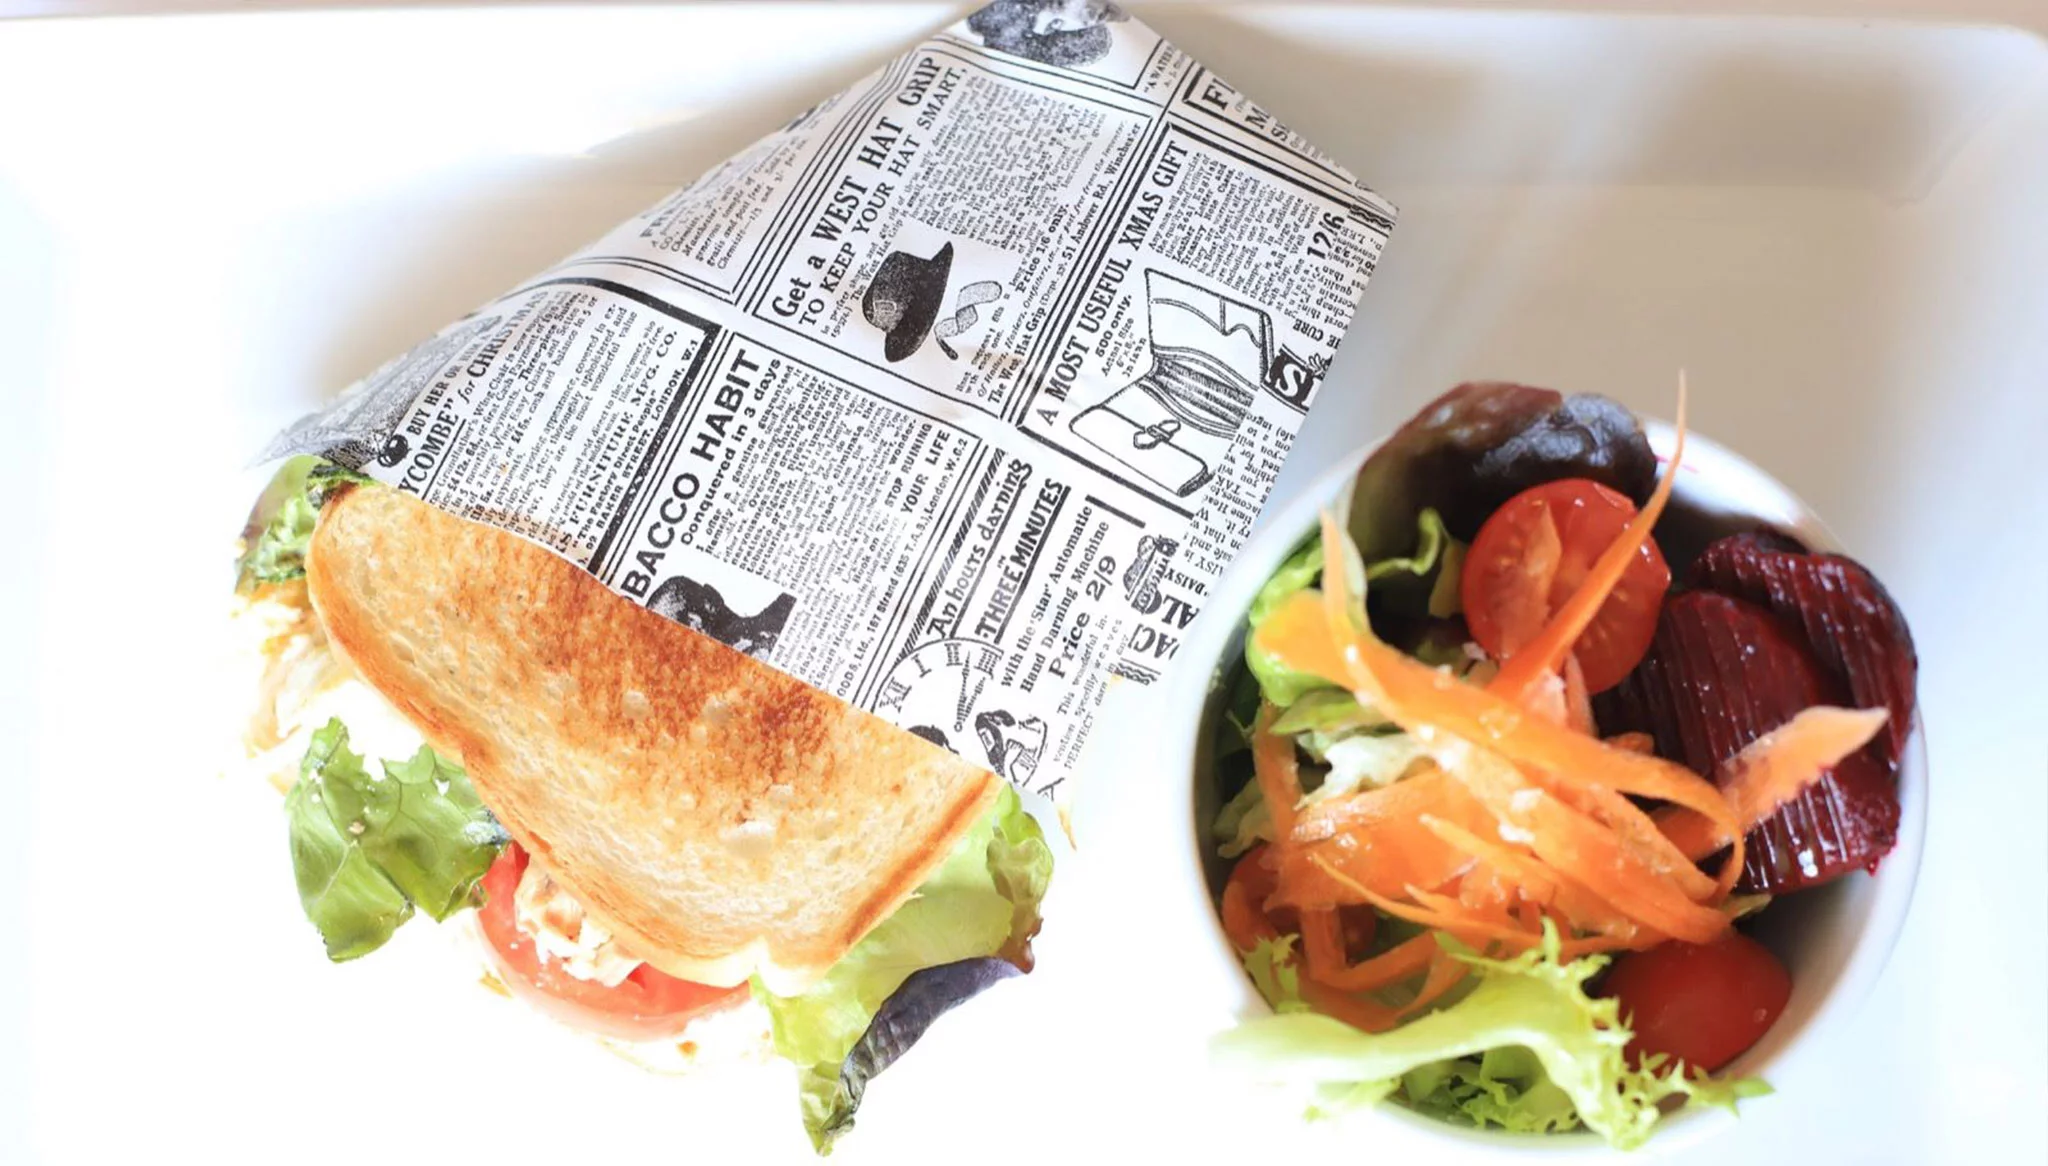 Sandwich y ensalada, almuerzos y picoteos en Restaurant Noguera